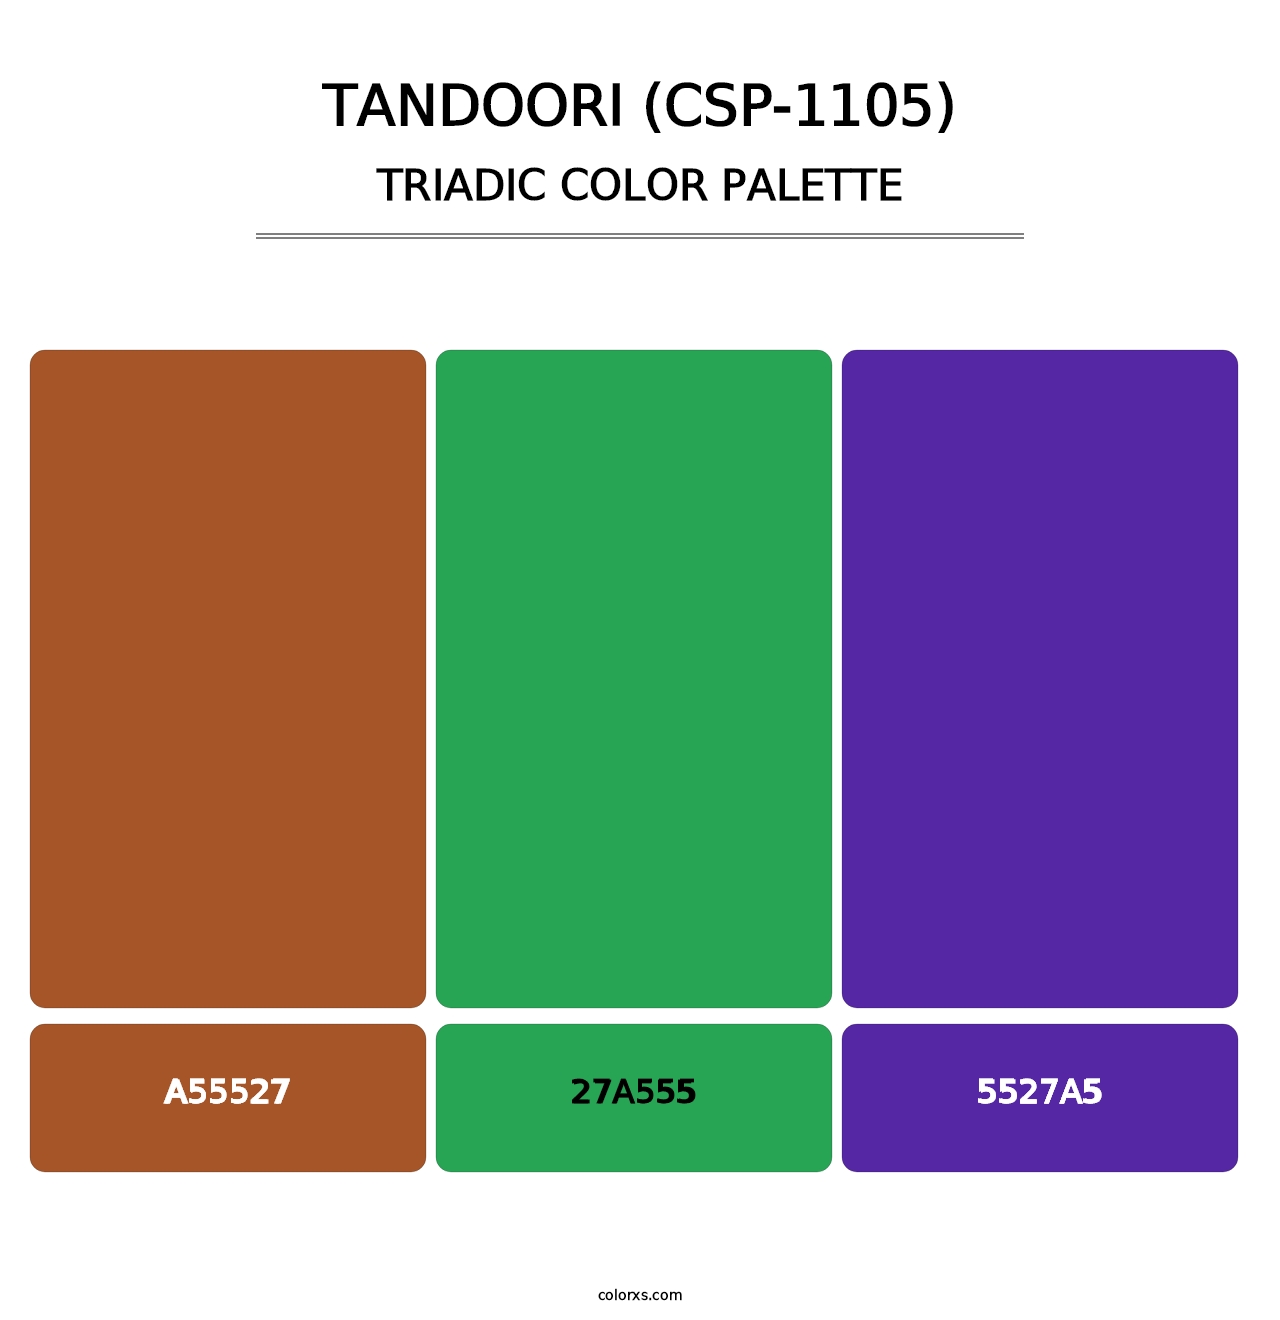 Tandoori (CSP-1105) - Triadic Color Palette